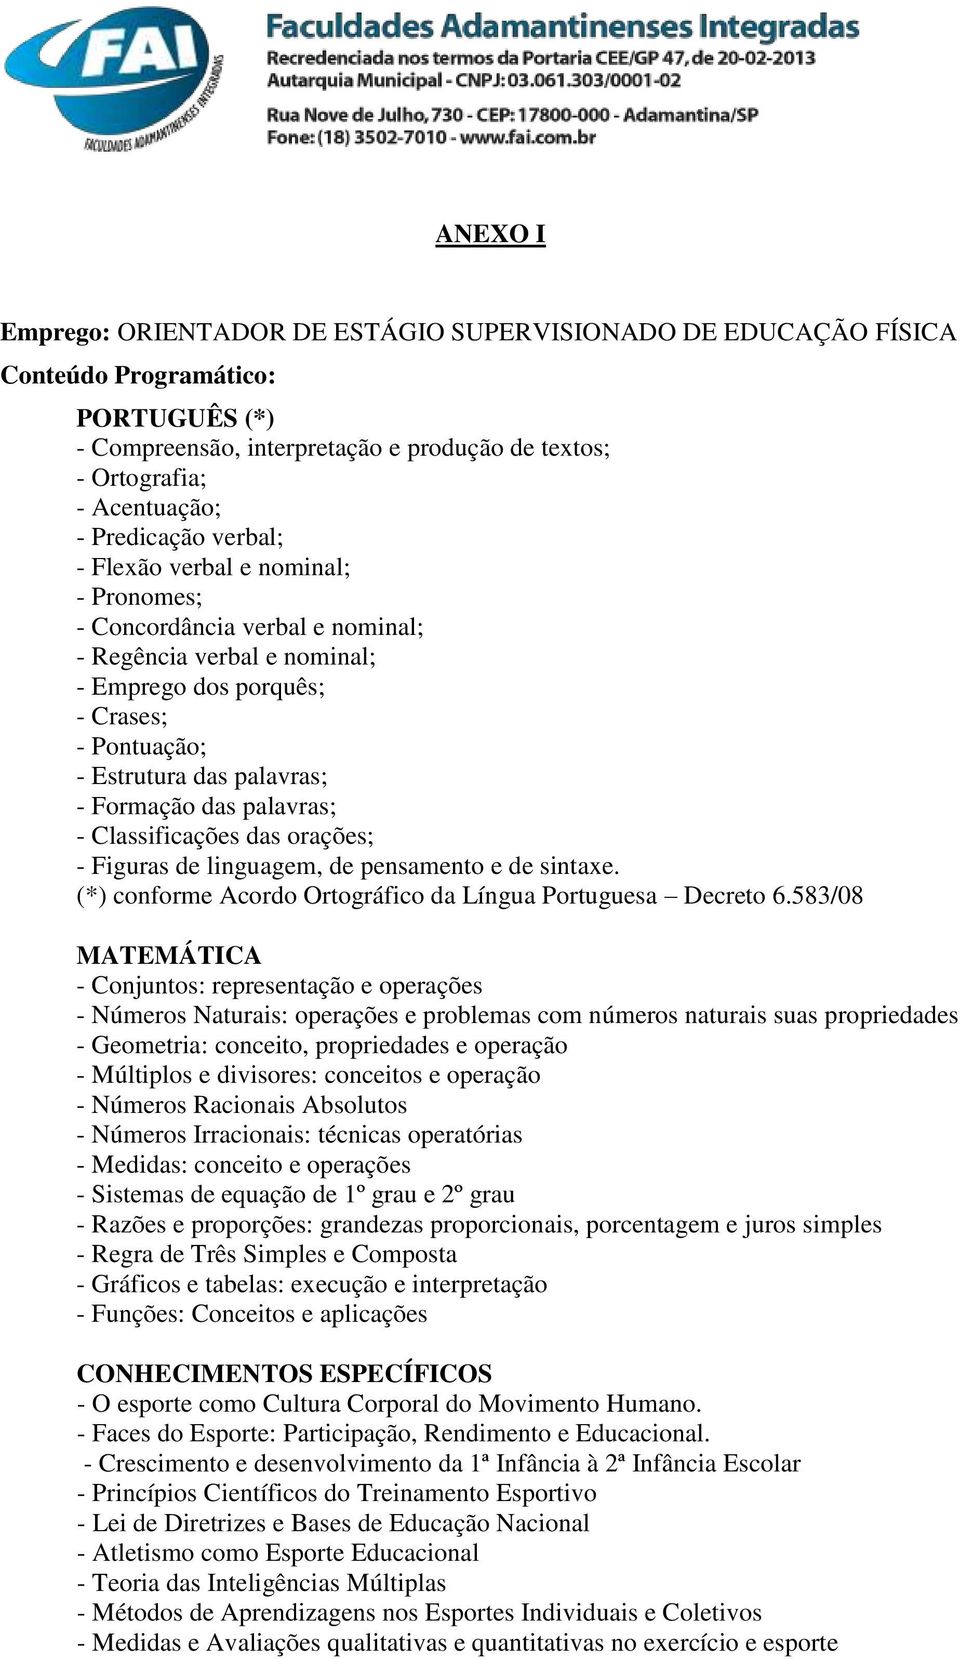 Formação das palavras; - Classificações das orações; - Figuras de linguagem, de pensamento e de sintaxe. (*) conforme Acordo Ortográfico da Língua Portuguesa Decreto 6.